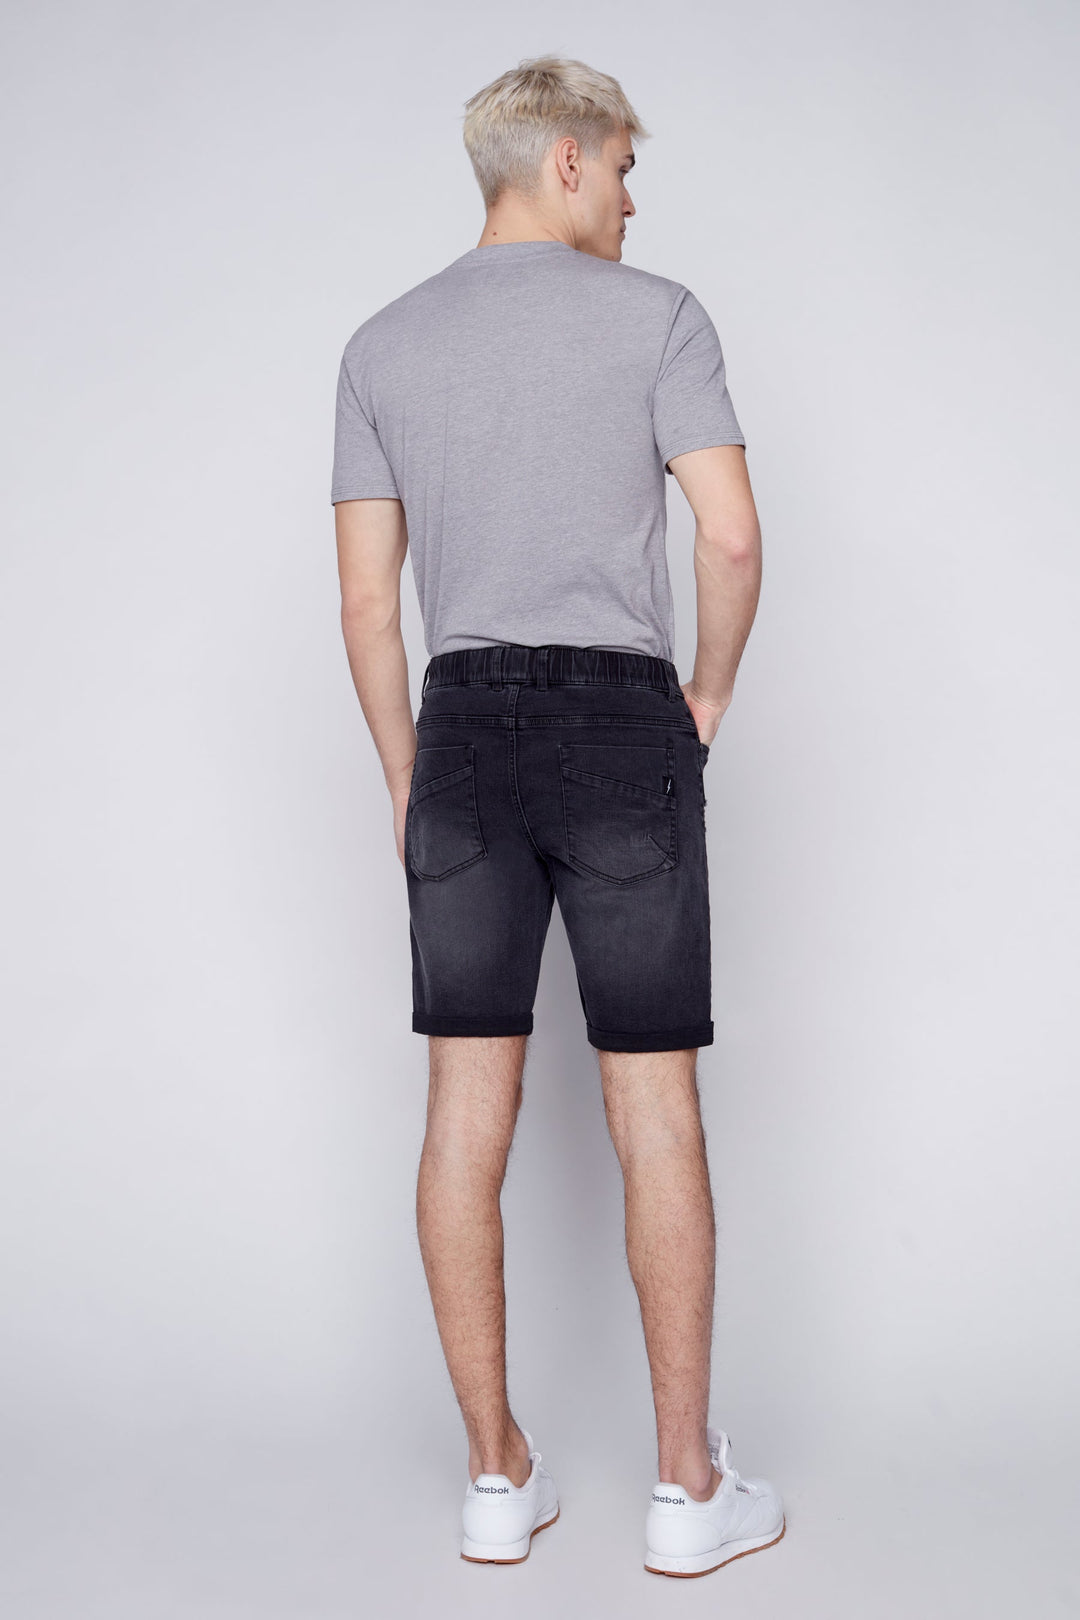 LENNON - Mens Rolled-Up Shorts - Vintage Black